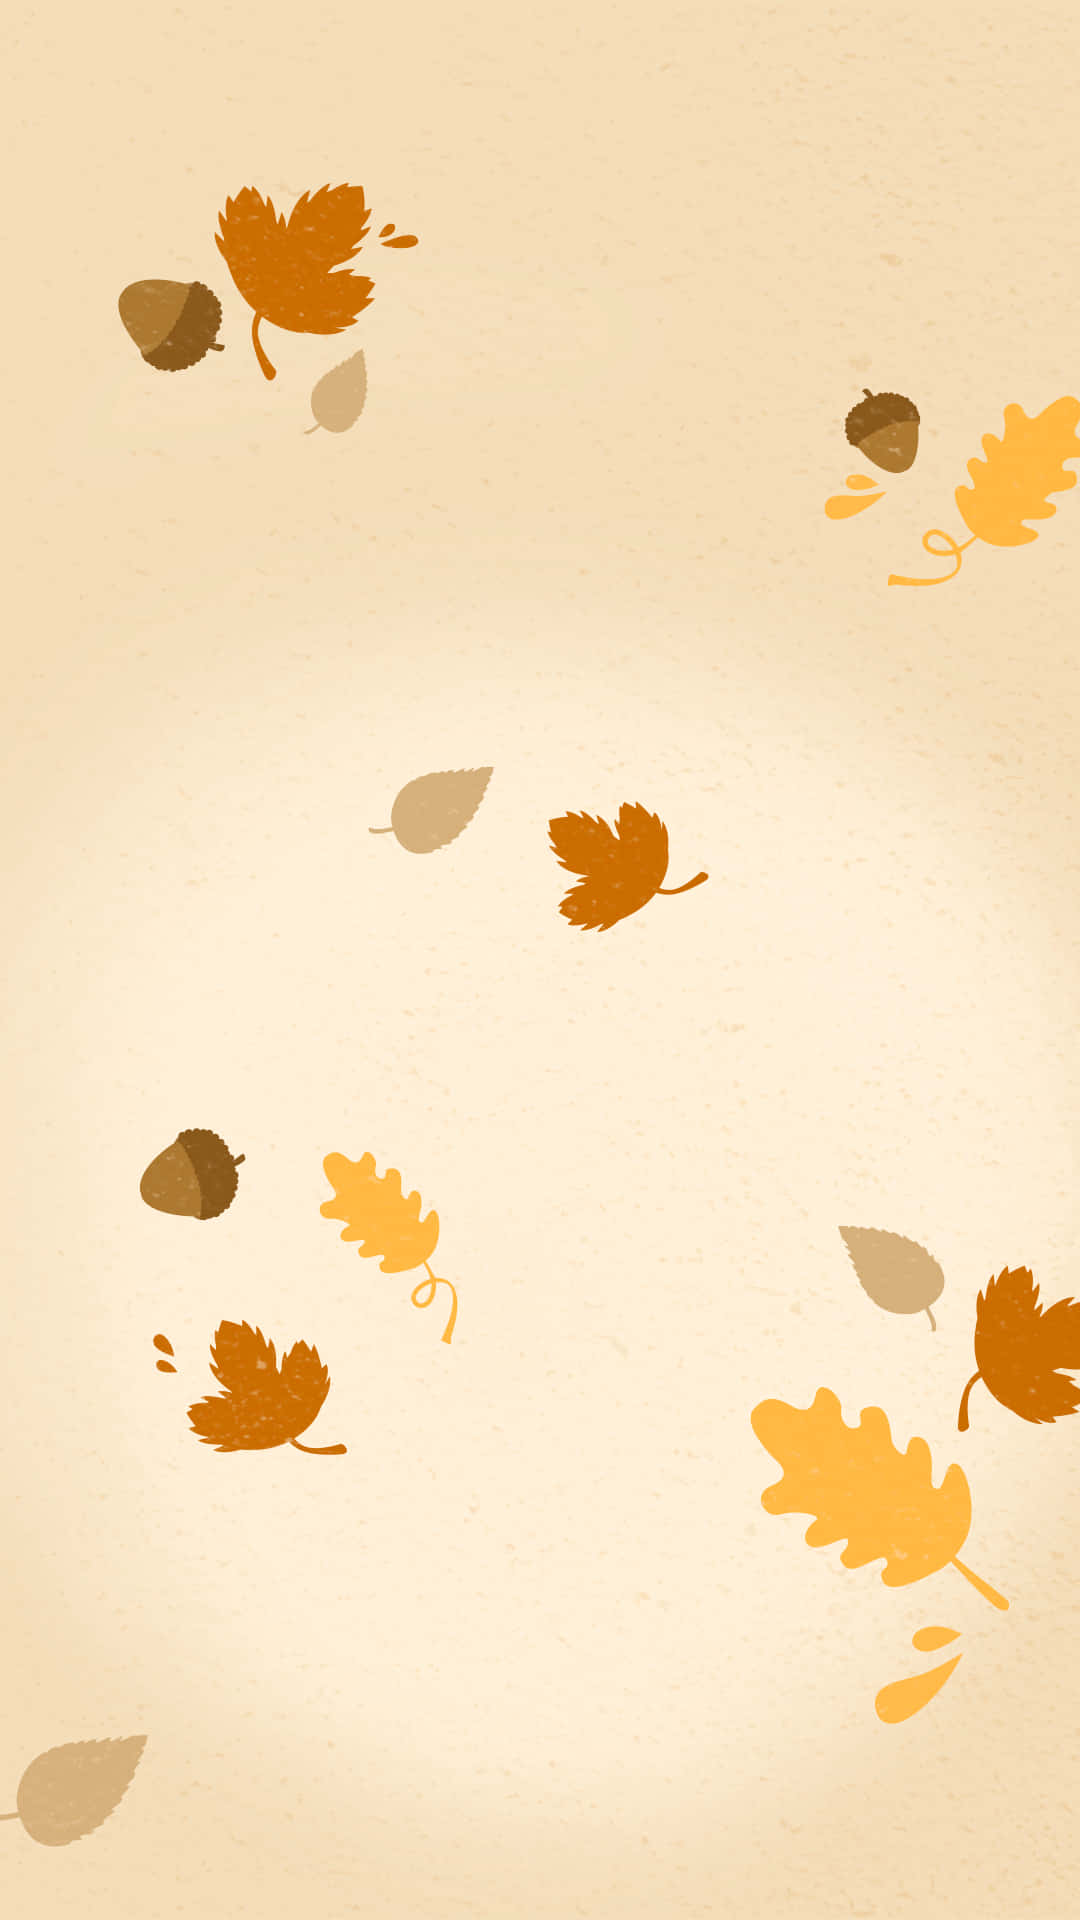 Njutav Den Perfekta Hösten Med Denna Söta Iphone-bakgrundsbild. Wallpaper